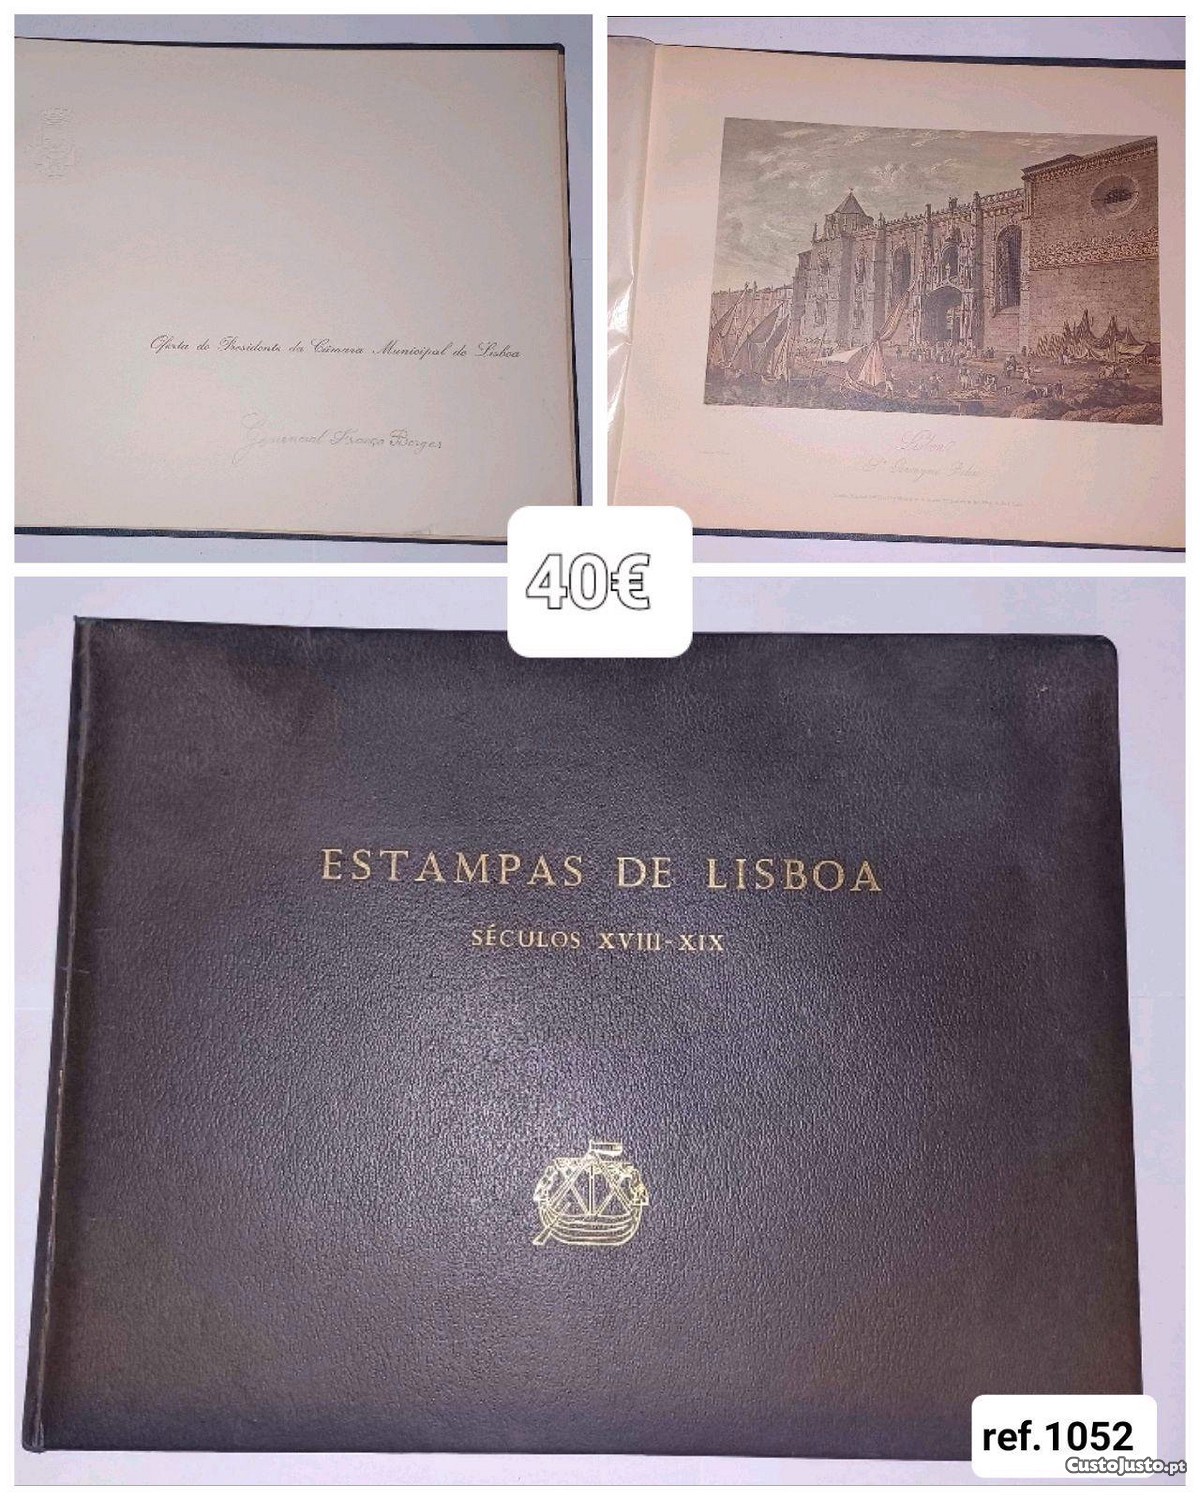 Estampas de Lisboa séc. XVIII-XIX